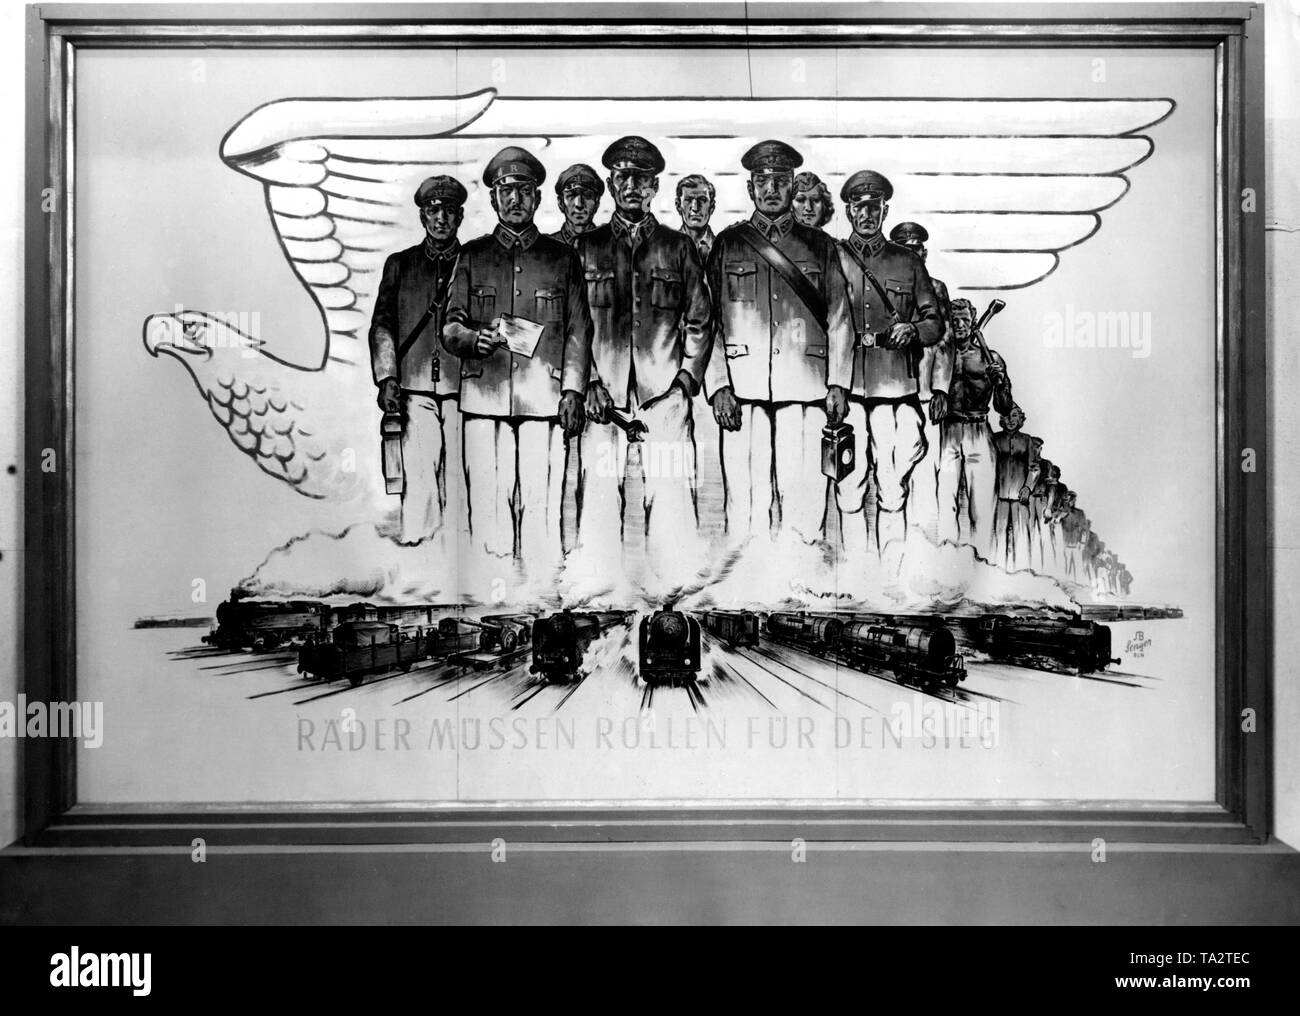 Advertisment Reichsbahn avec les conducteurs de trains de la première rangée. Derrière, divers groupes d'occupation en Allemagne et le slogan "roues doivent rouler pour la victoire'. Banque D'Images